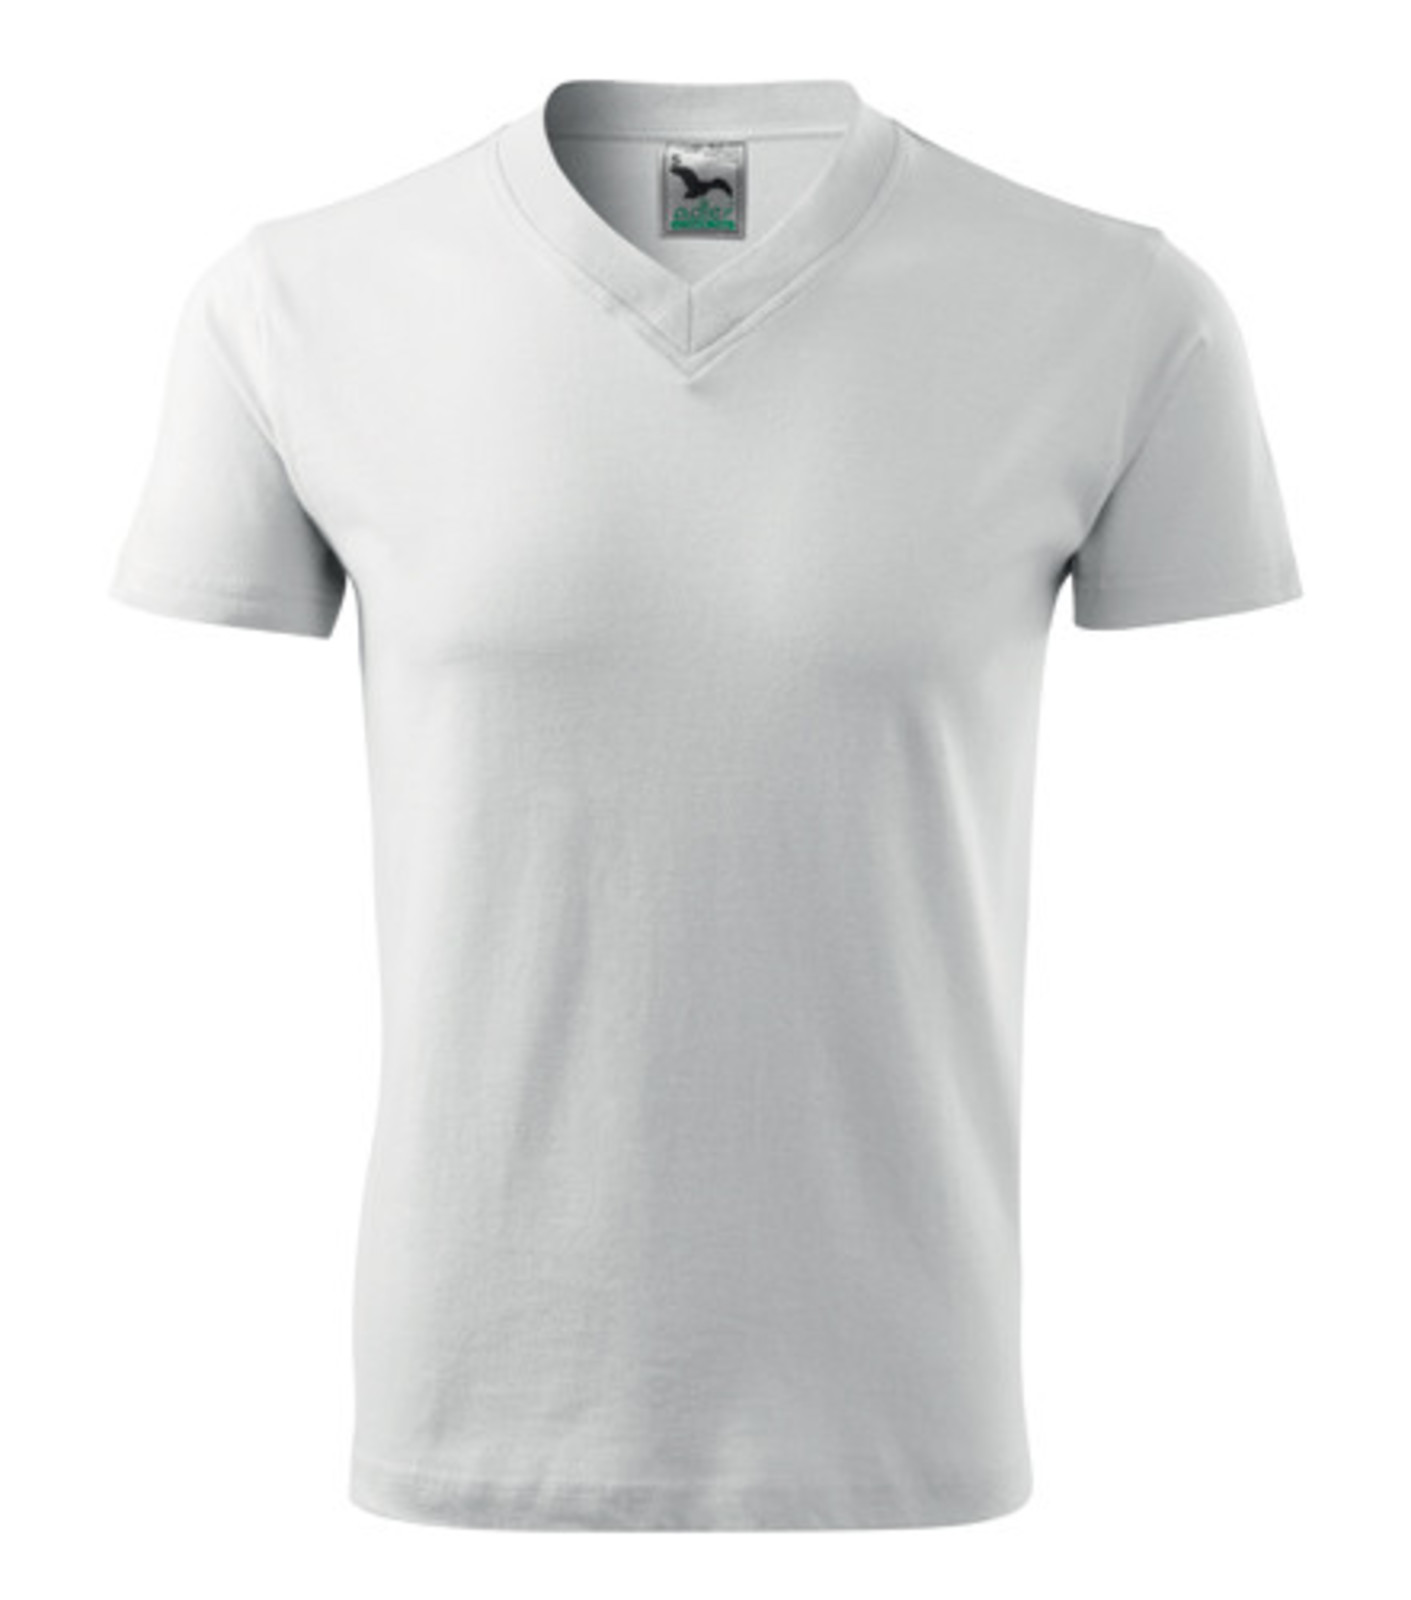 Unisex tričko s výstrihom Adler V-Neck 102 - veľkosť: 3XL, farba: biela